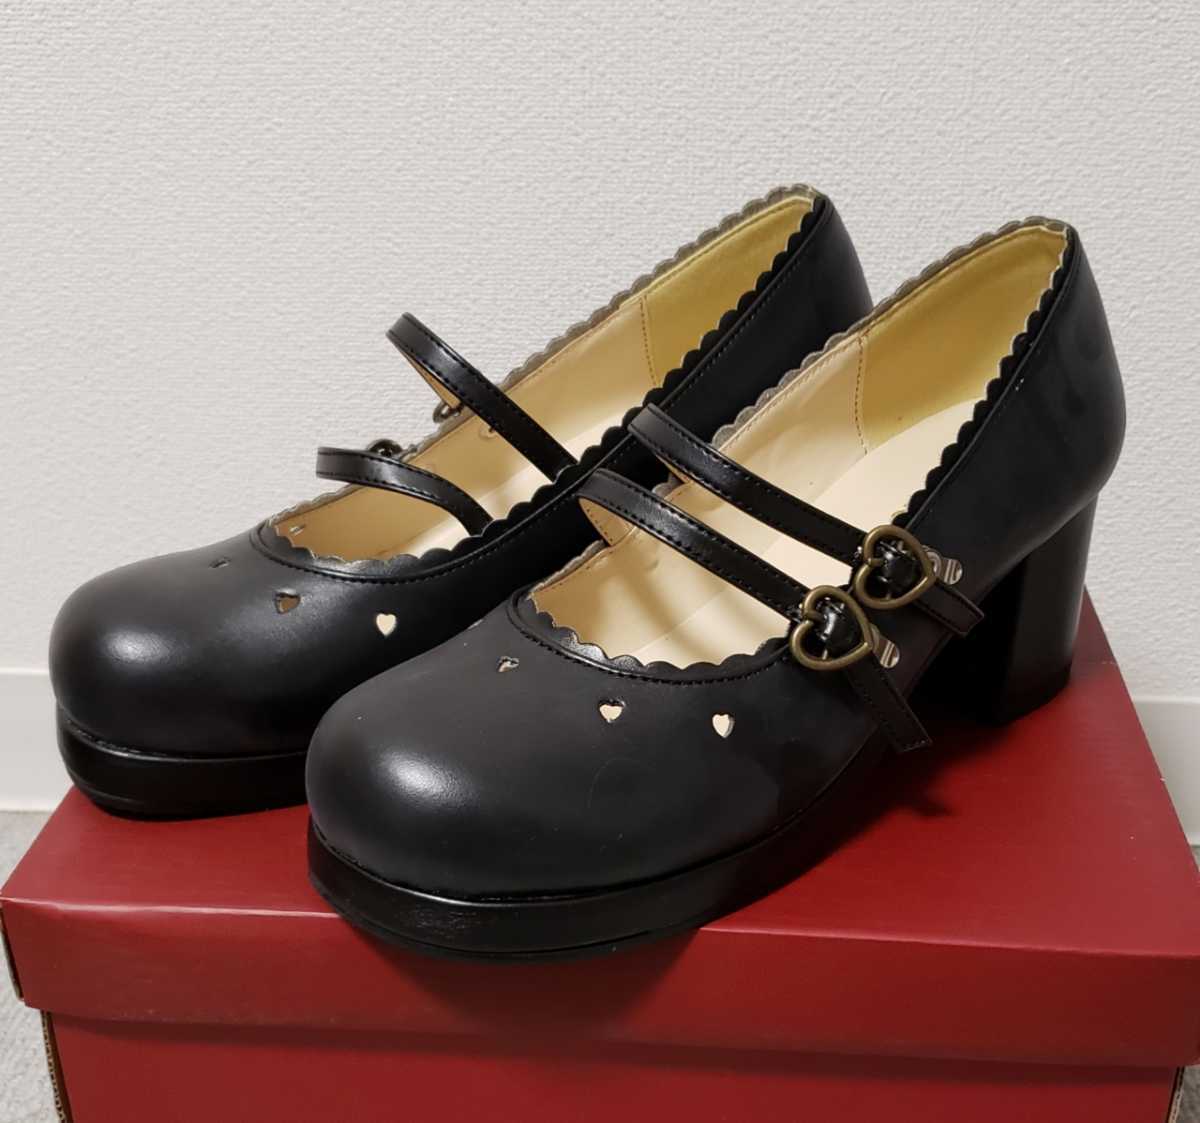 BODYLINE製 ゴスロリ靴 内祝い パンプス おでこ靴 お値打ち価格で 23.0cm レディース ブラック 黒